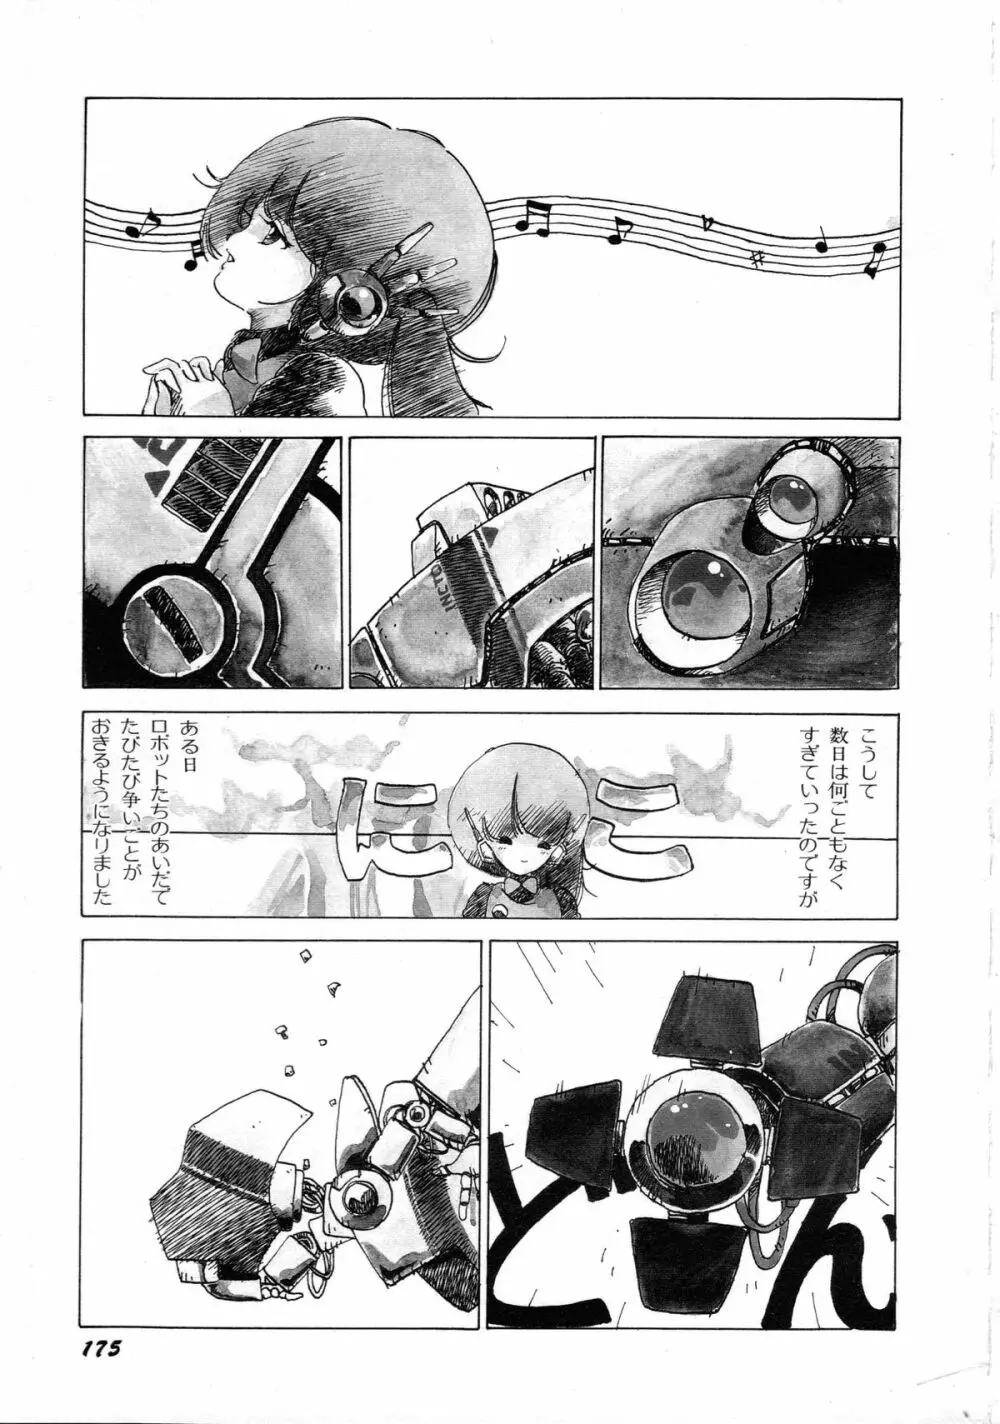 ロボット&美少女傑作選 レモン・ピープル1982-1986 179ページ